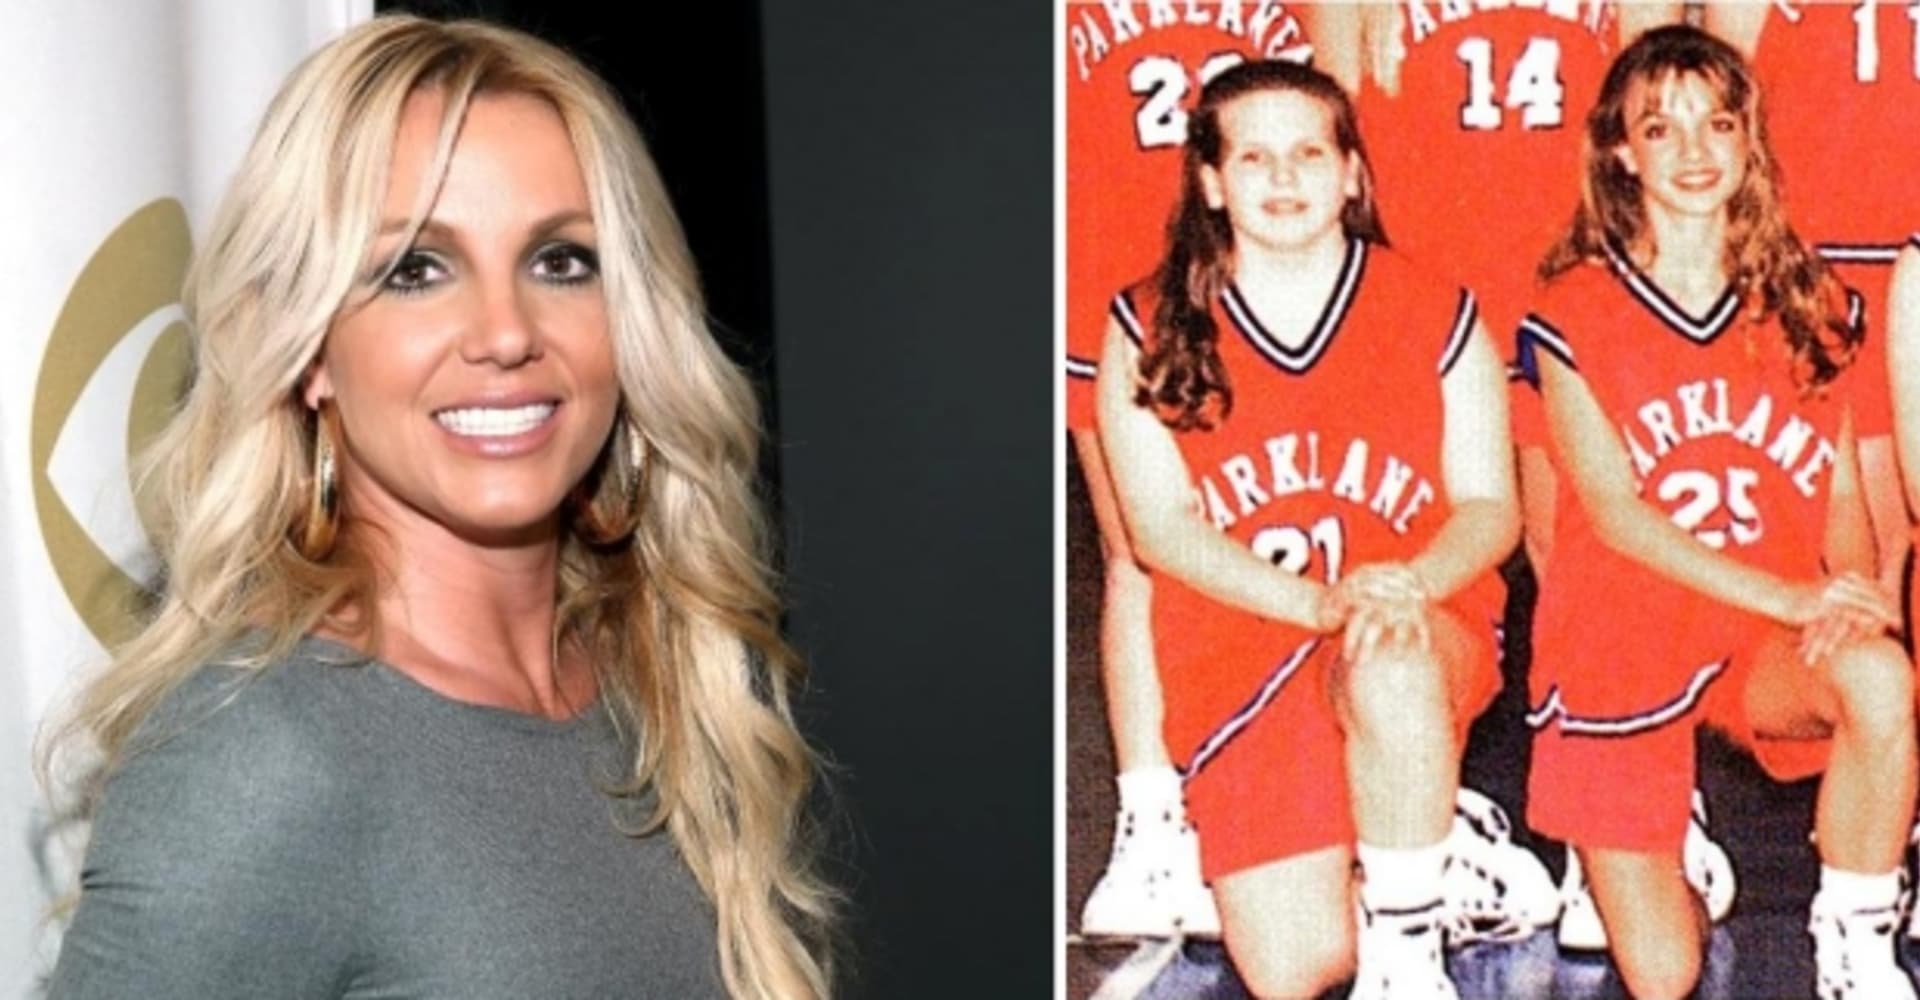 Zpěvačka Britney Spears... určitě si basketball ještě někdy zahraje...